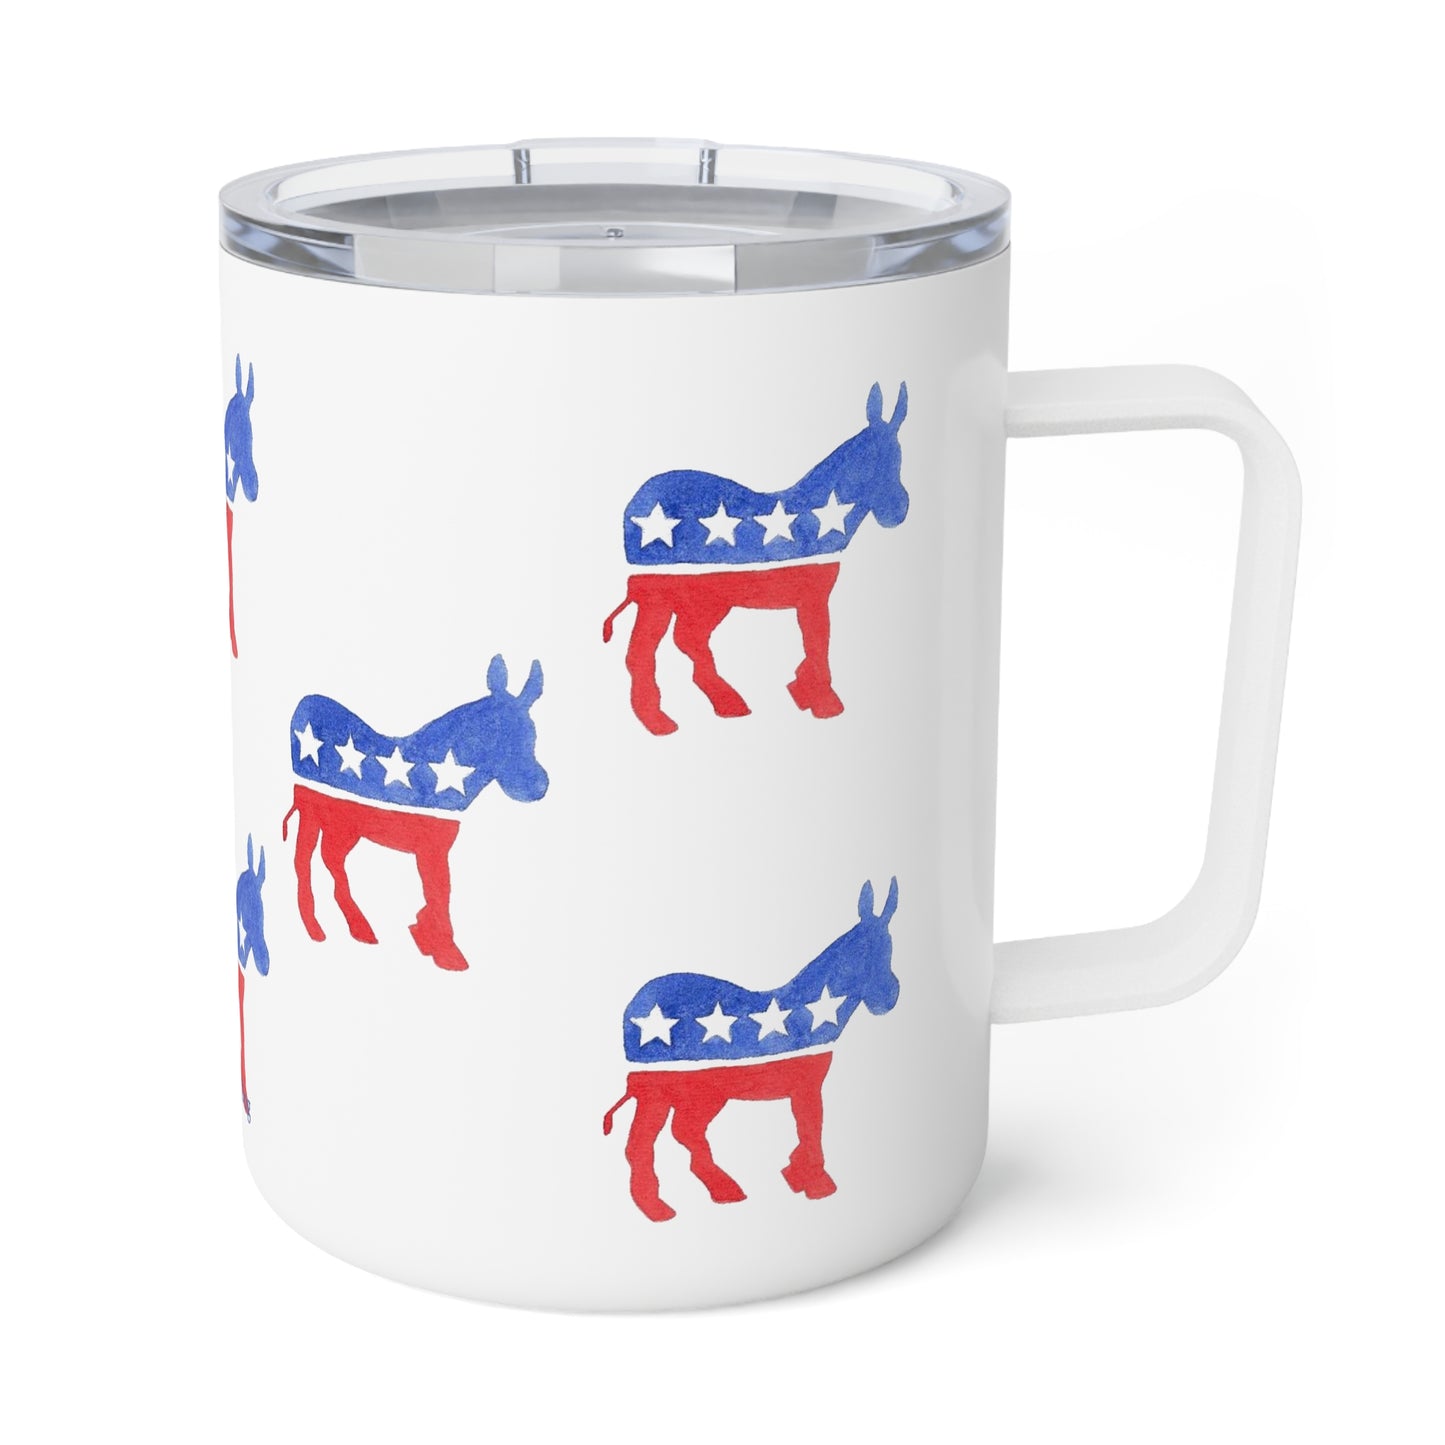 Democrat Donkey Insulated Mug